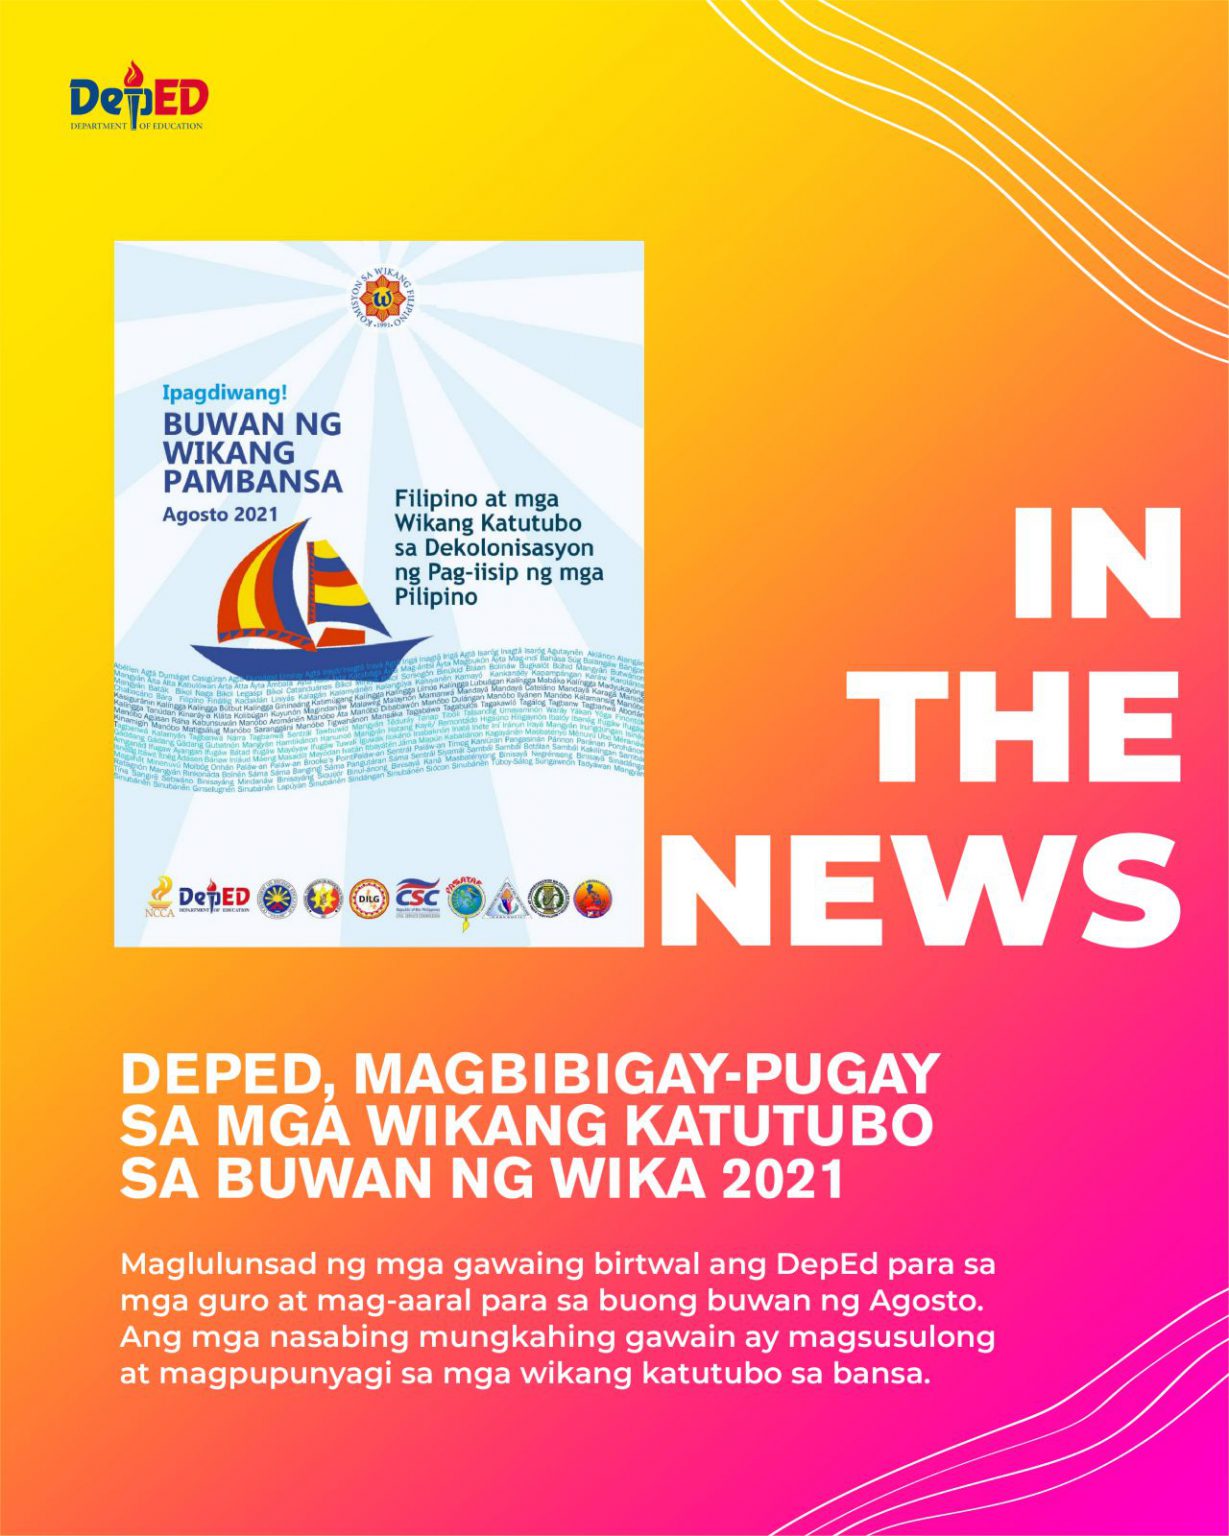 DepEd, magbibigaypugay sa mga Wikang Katutubo sa Buwan ng Wika 2021